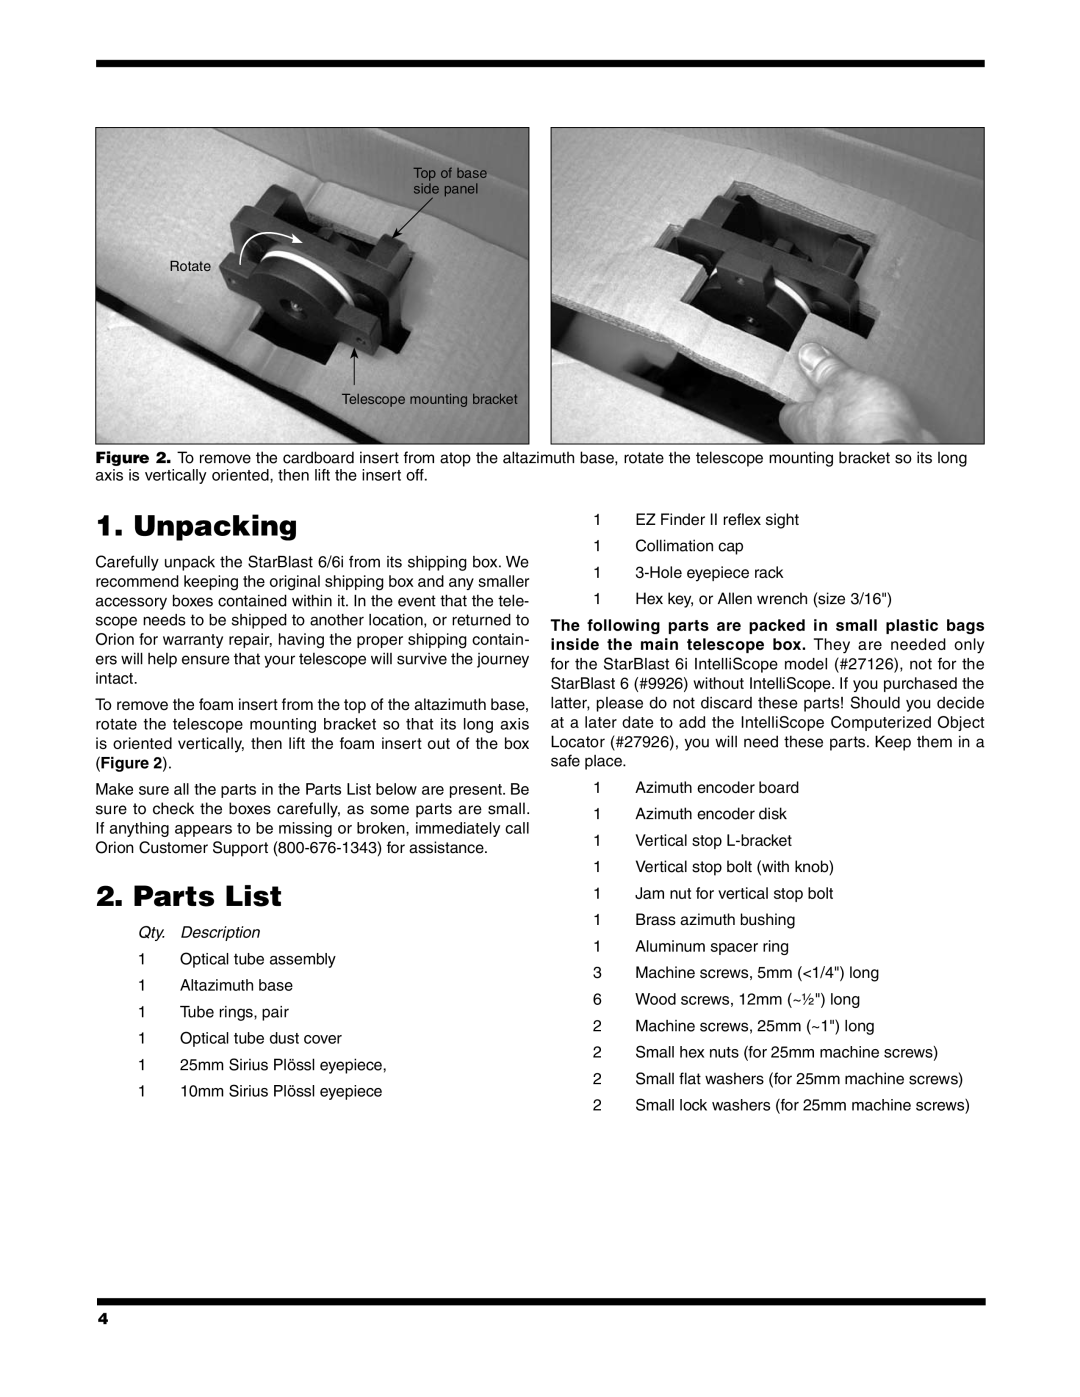 Orion 6/6I instruction manual Unpacking, Parts List, Qty. Description 